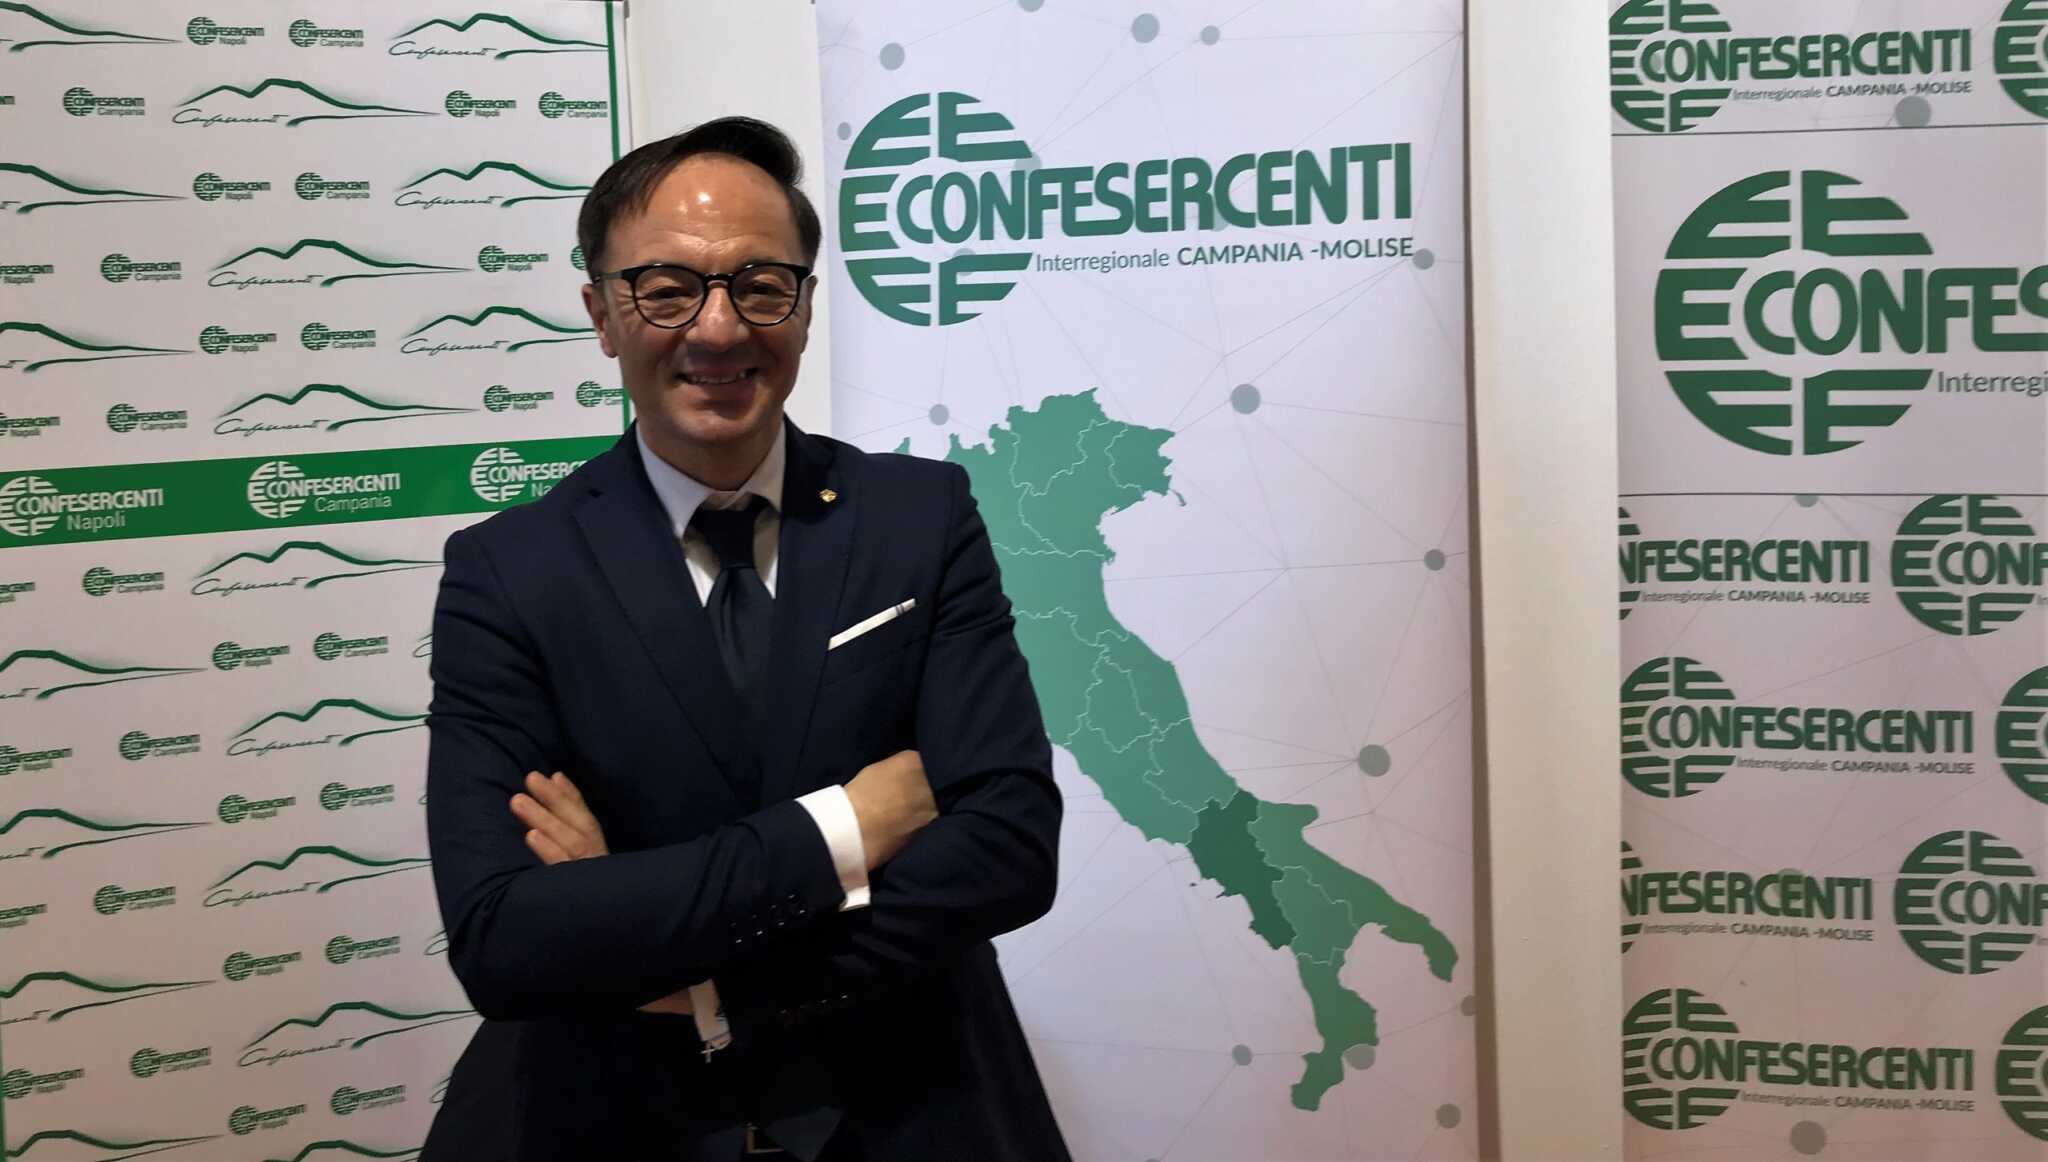 Saldi 2020 al via sabato, Confesercenti Campania: “158 euro di spesa pro capite, 380 milioni di incassi per le aziende”